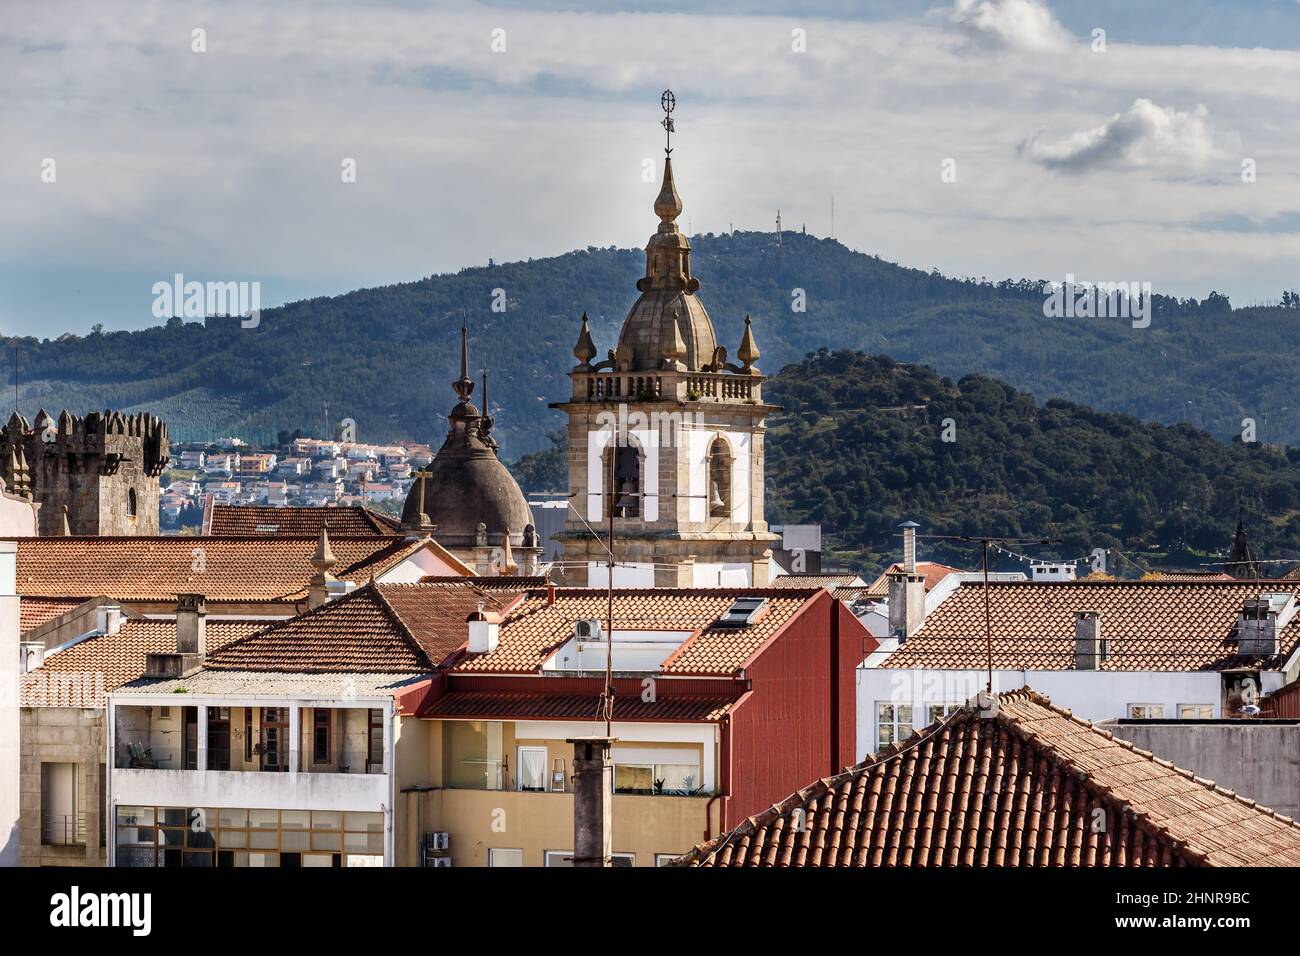 Straßenatmosphäre und architektonische Details in Brage, Portugal Stockfoto